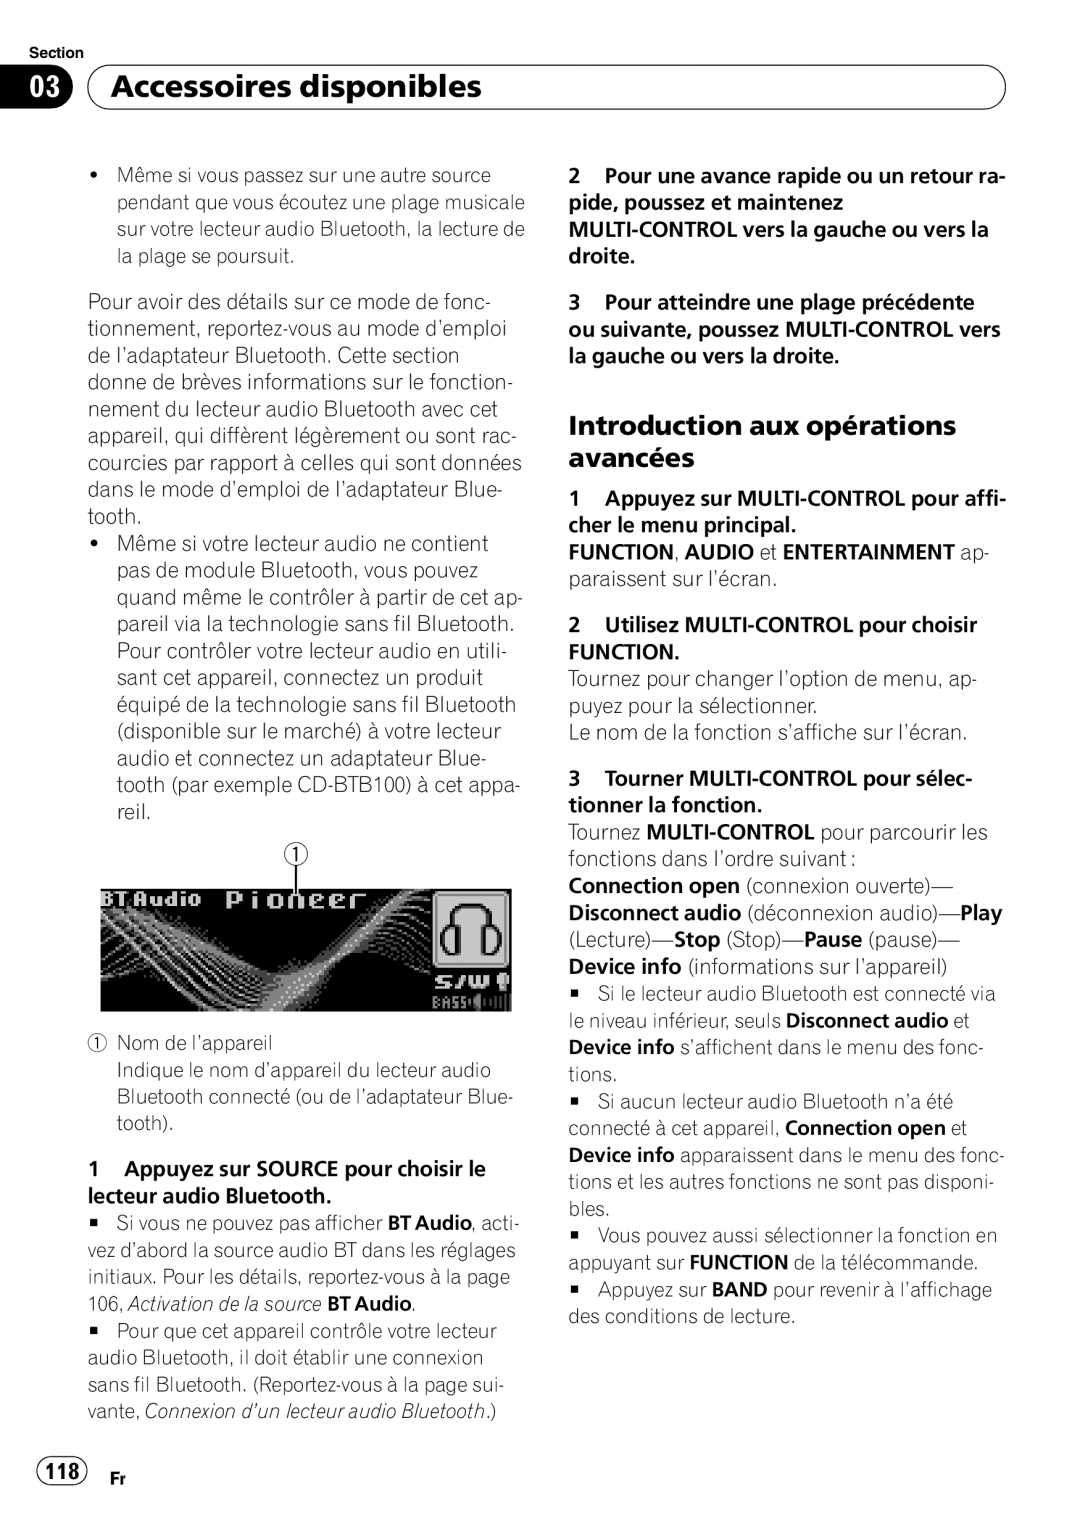 Pioneer DEH-P690UB operation manual 118 Fr, 03Accessoires disponibles, Introduction aux opérations avancées 